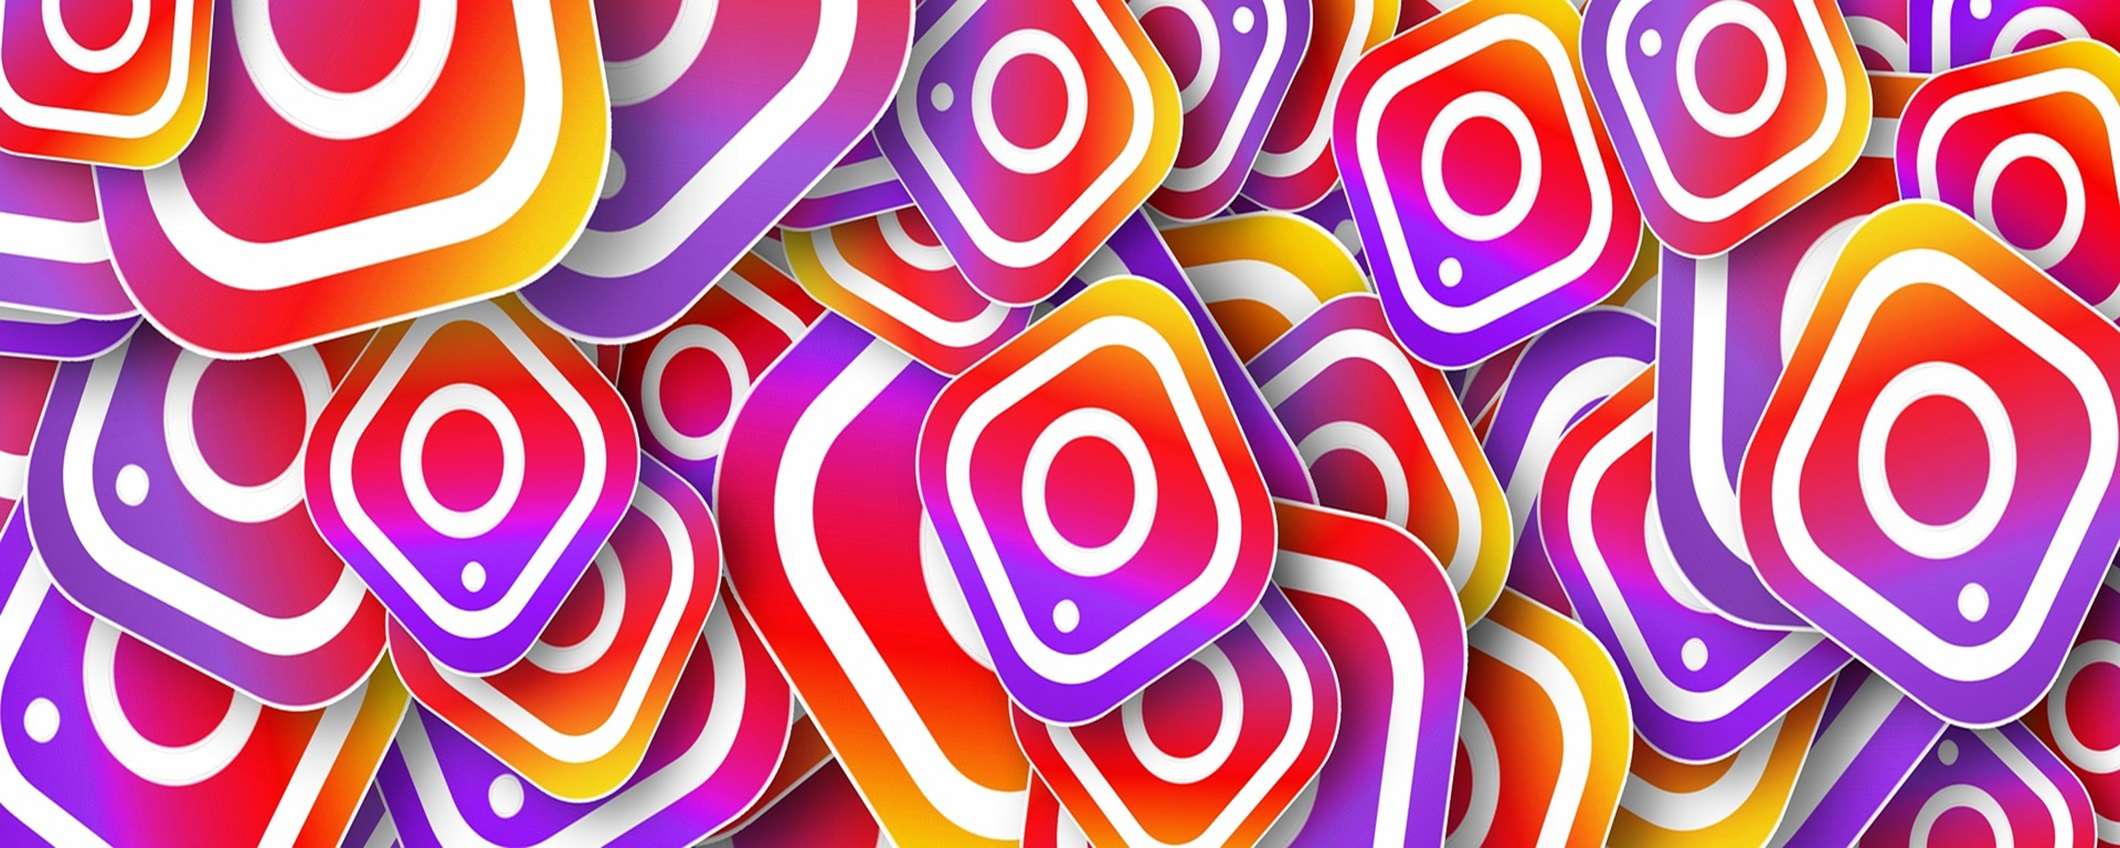 Instagram presto nuove funzioni AI